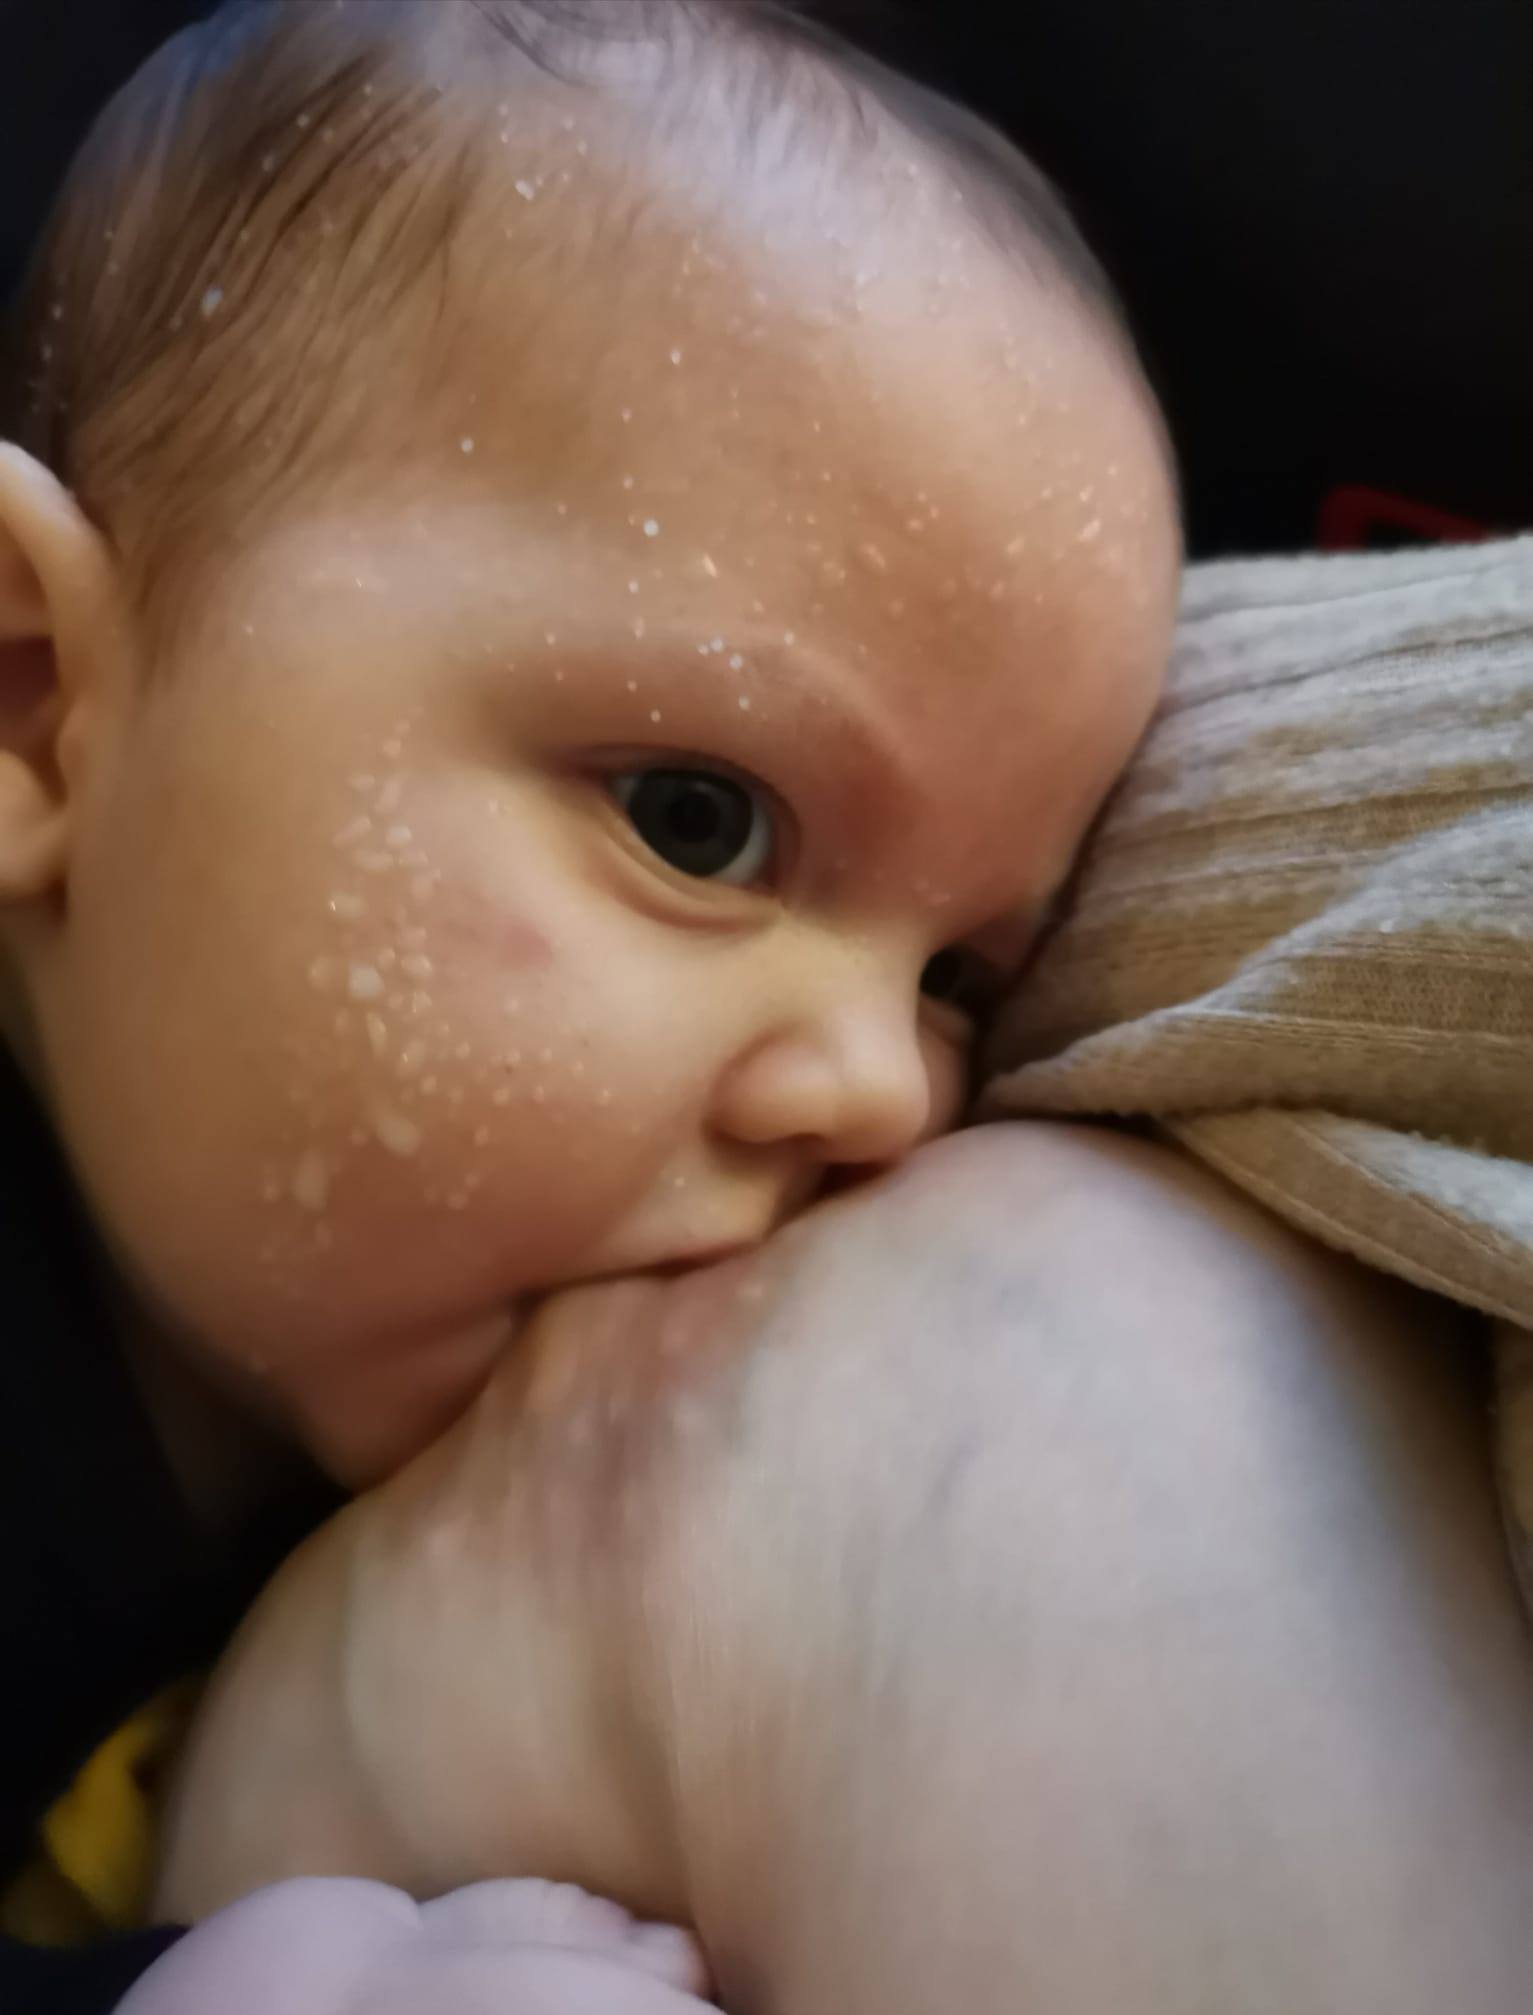 Baby med mælkesprøjt ved brystet